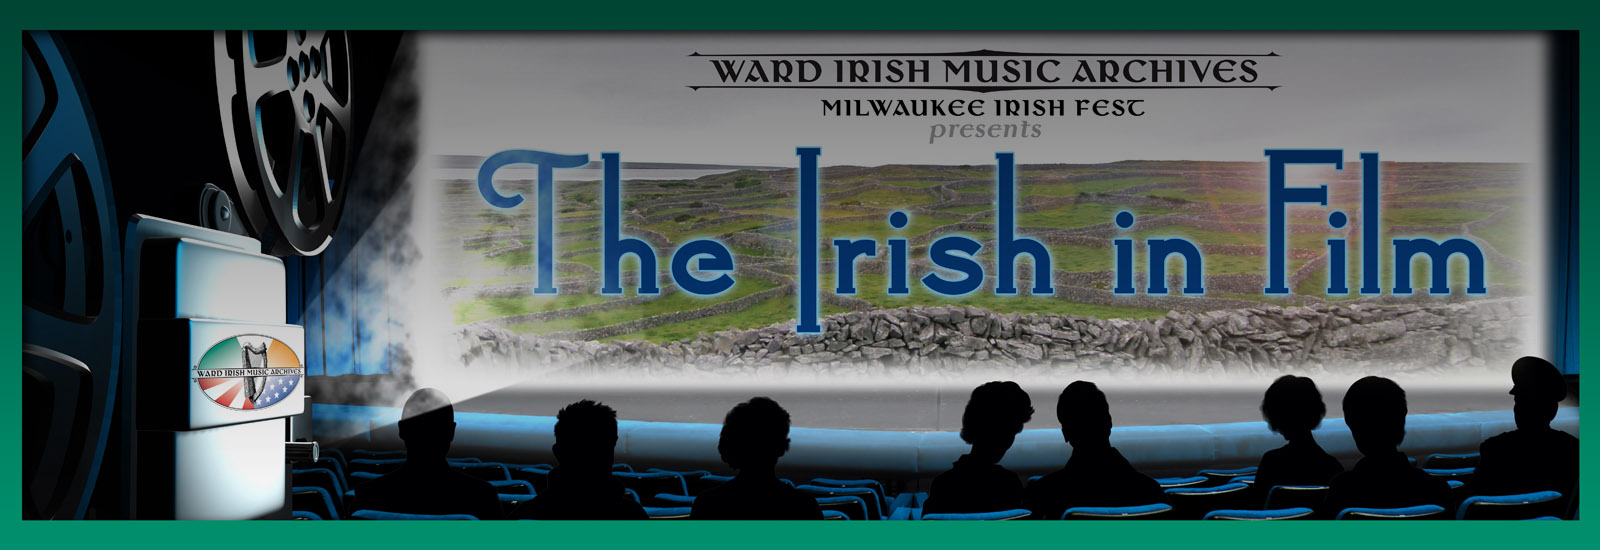 The Irish in Film Exhibit - Ward Irish Music Archives